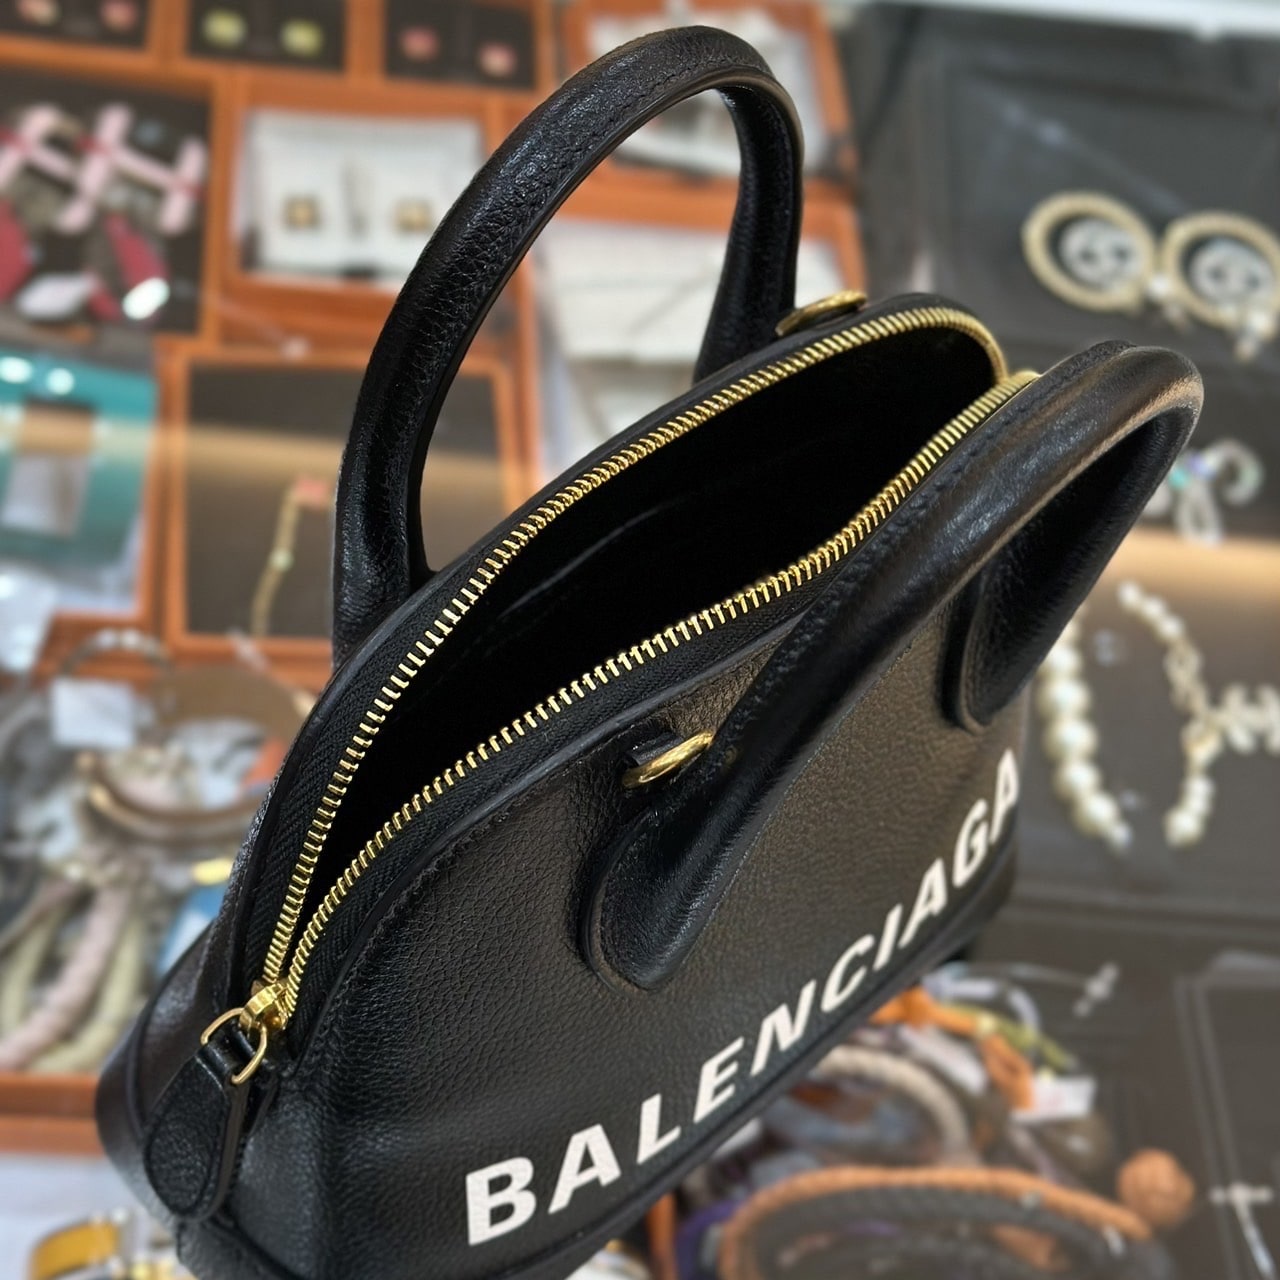 BALENCIAGA Ville XXS Handbag - Madame N Luxury